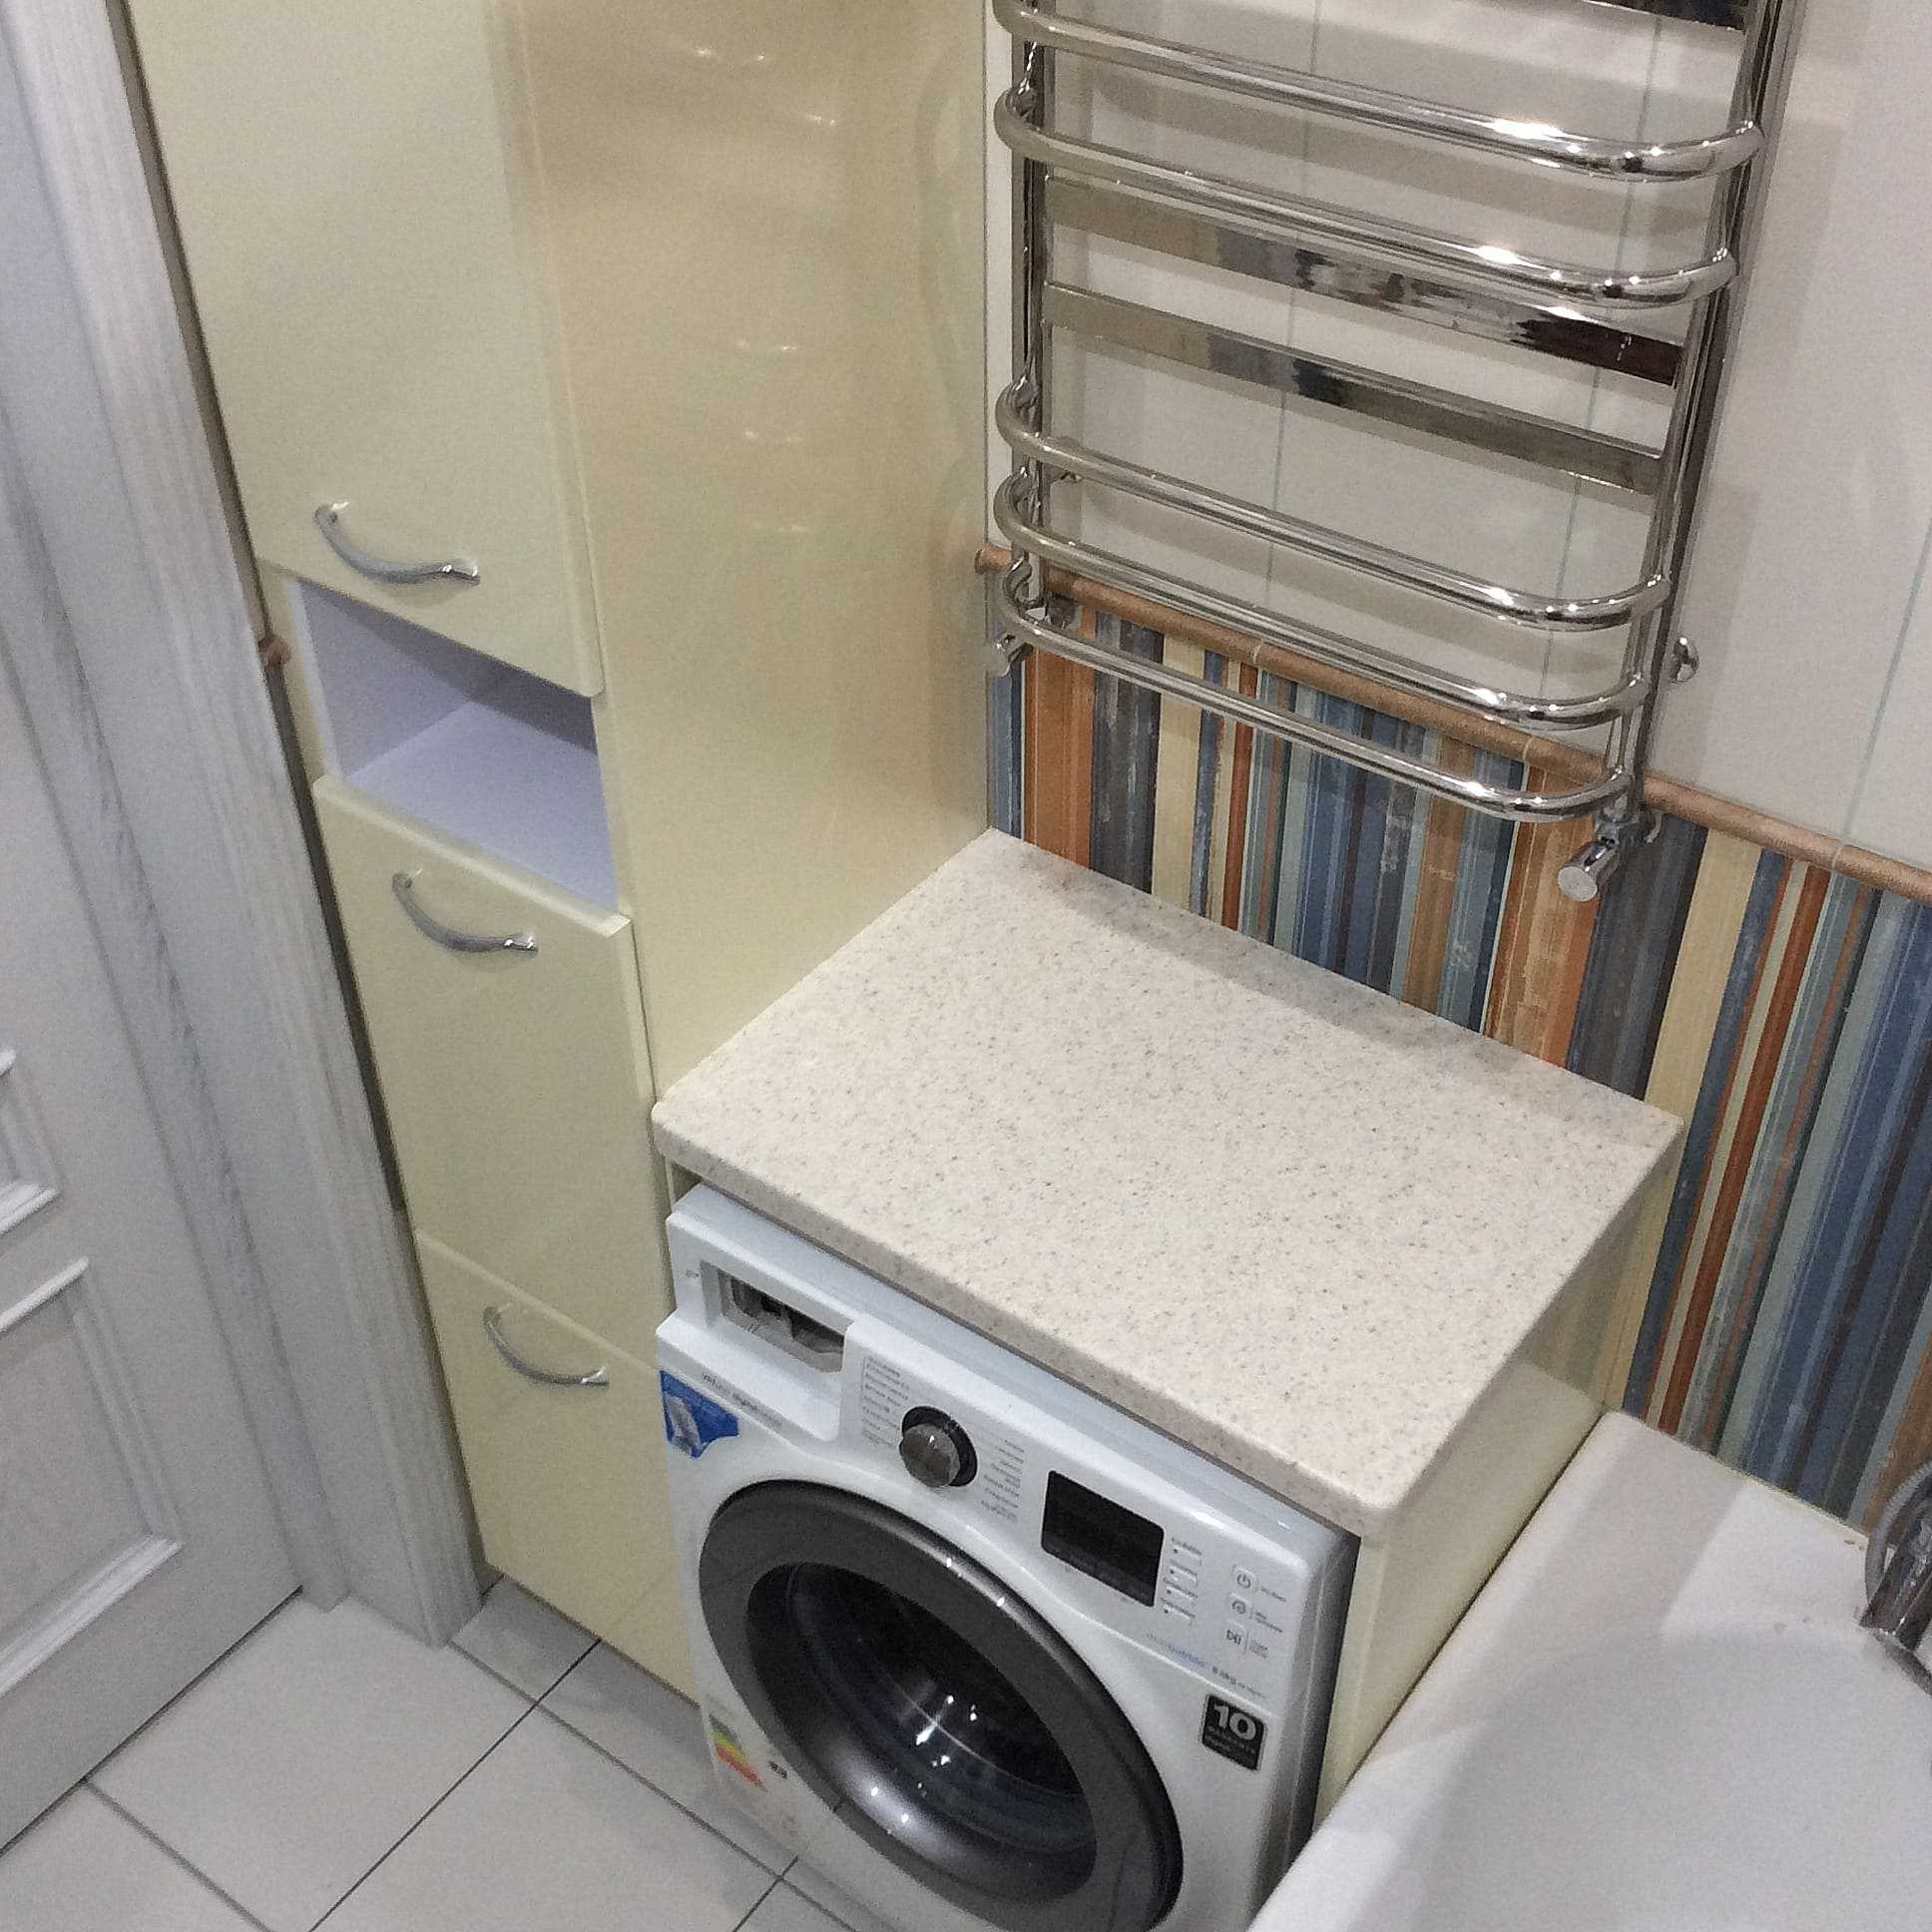 Спрятать стиральную машину в шкаф. стиральная машина на кухне — способы маскировки